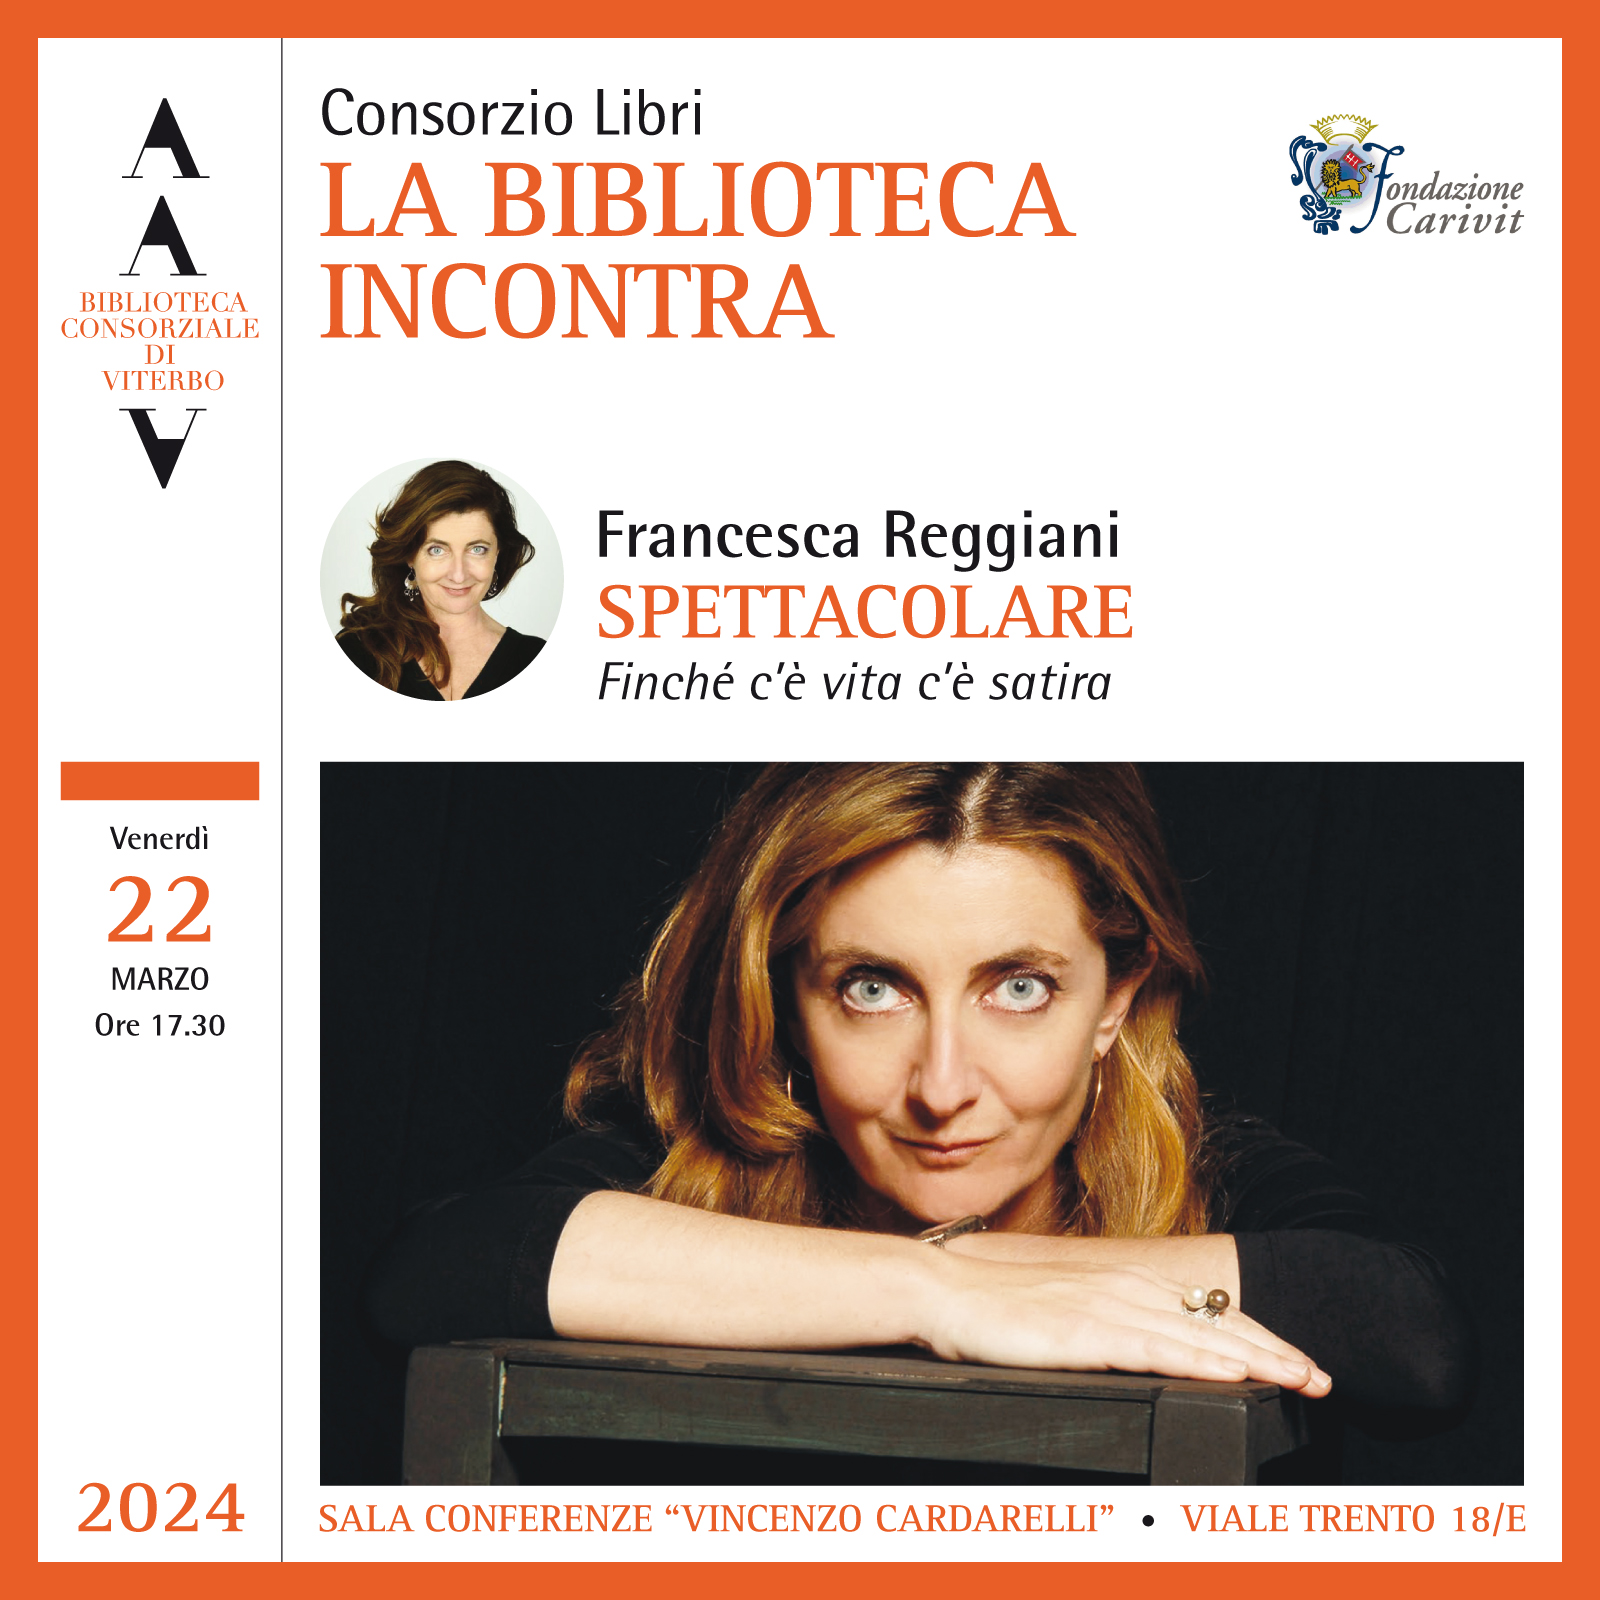 Francesca Reggiani, Spettacolare